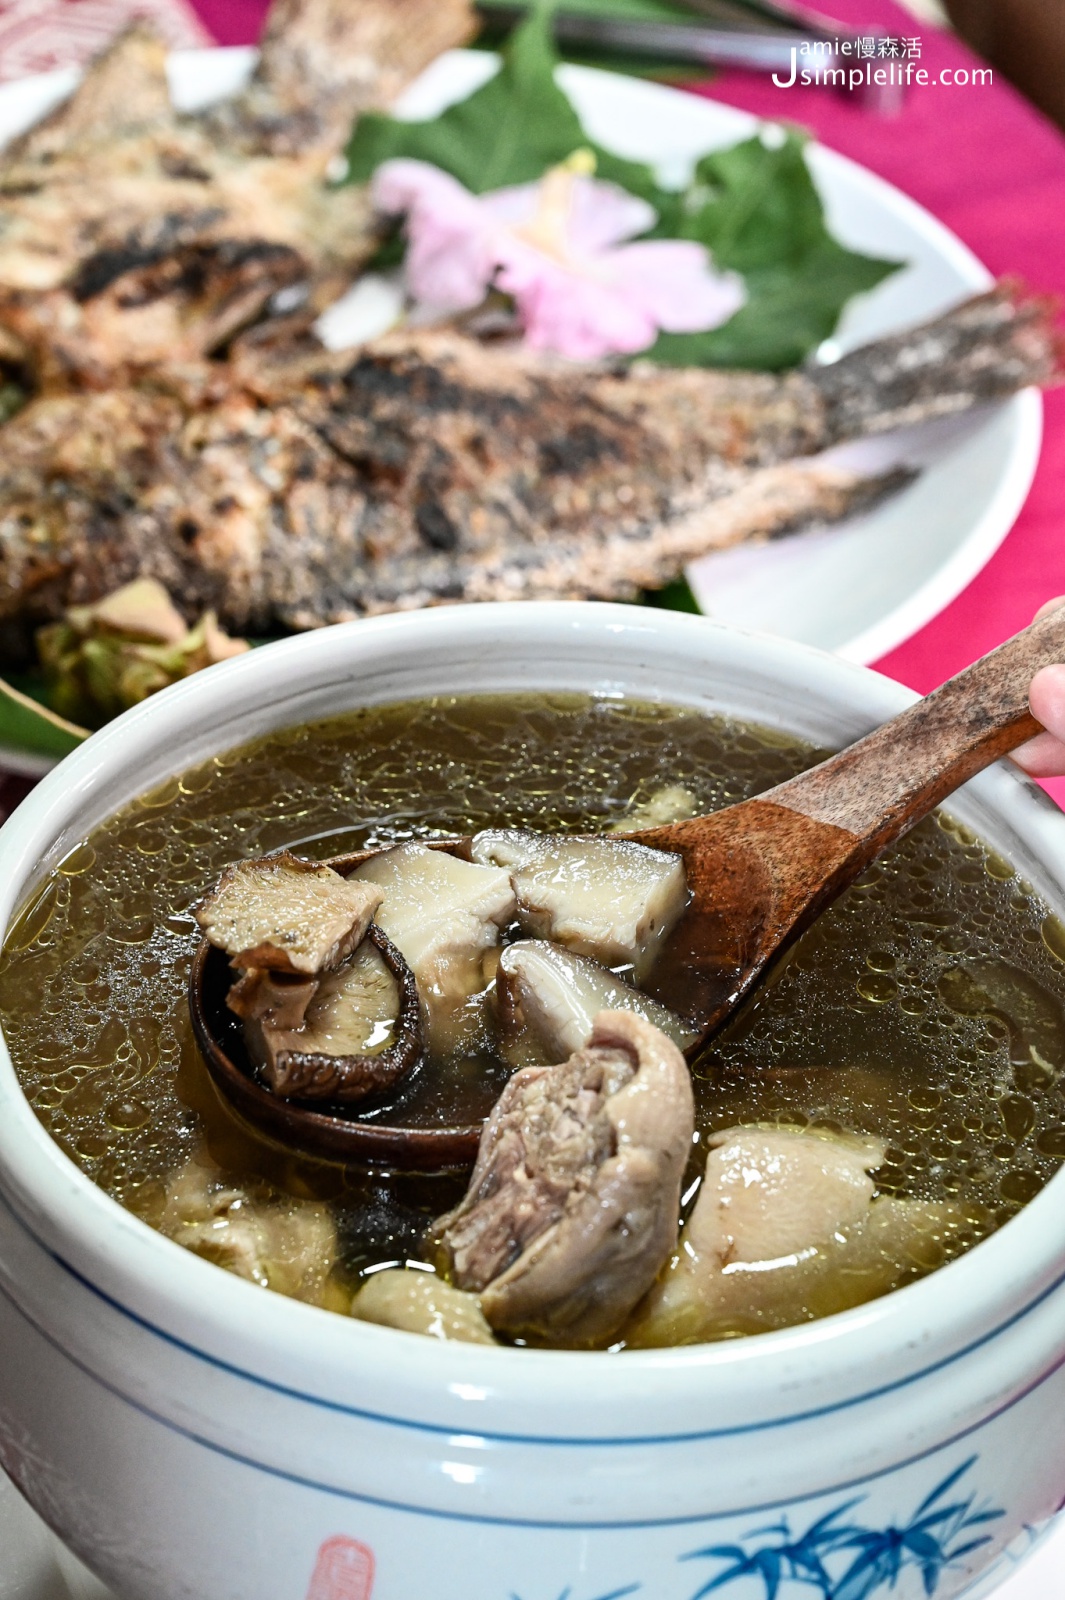 屏東恆春鎮 牡丹鄉 高士社區發展協會 在地風味料理 「段木香菇雞湯」